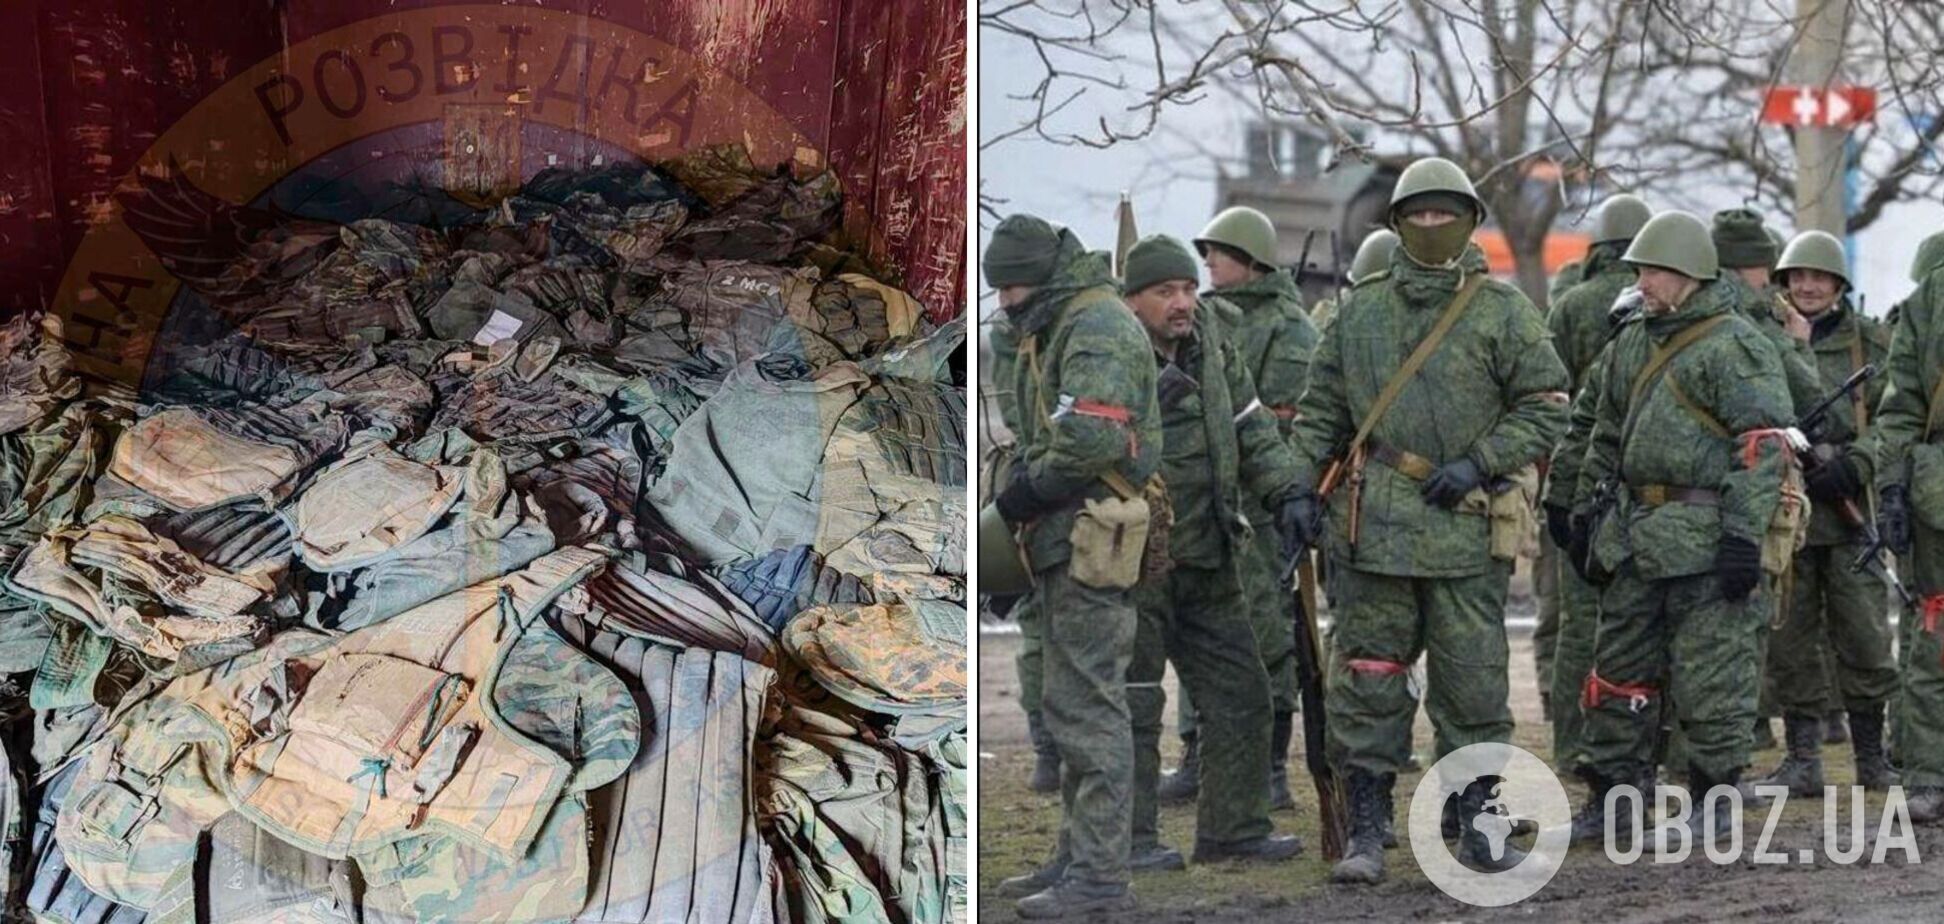 'Вторую армию мира' снаряжают списанными бронежилетами со ржавыми пластинами. Фото